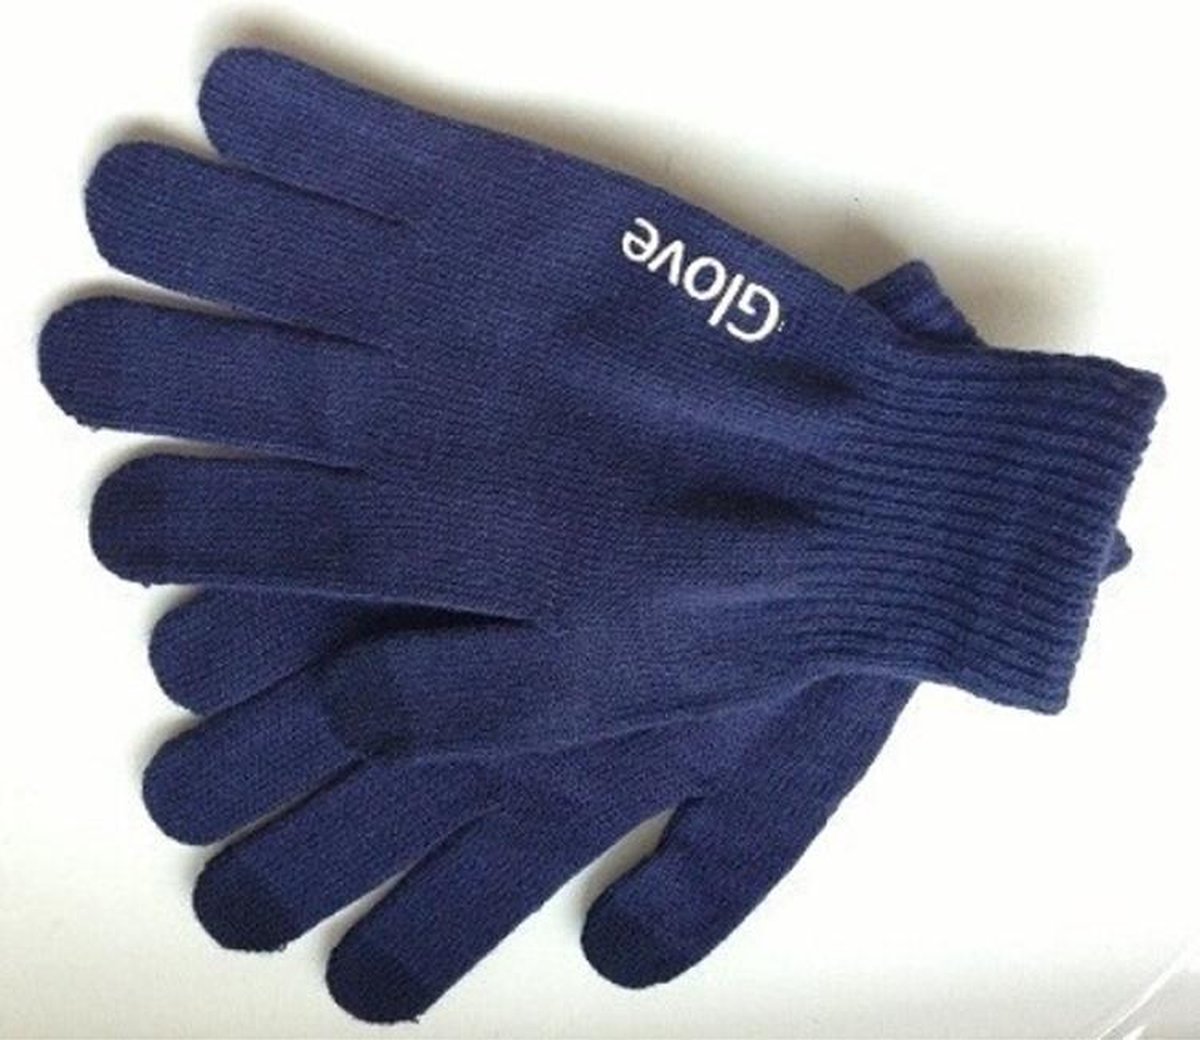 Touchscreen Handschoenen iGlove - Gebreid Dikke Kwaliteit - Winterhandschoenen - Heren / Dames - Blauw - Maat M / L